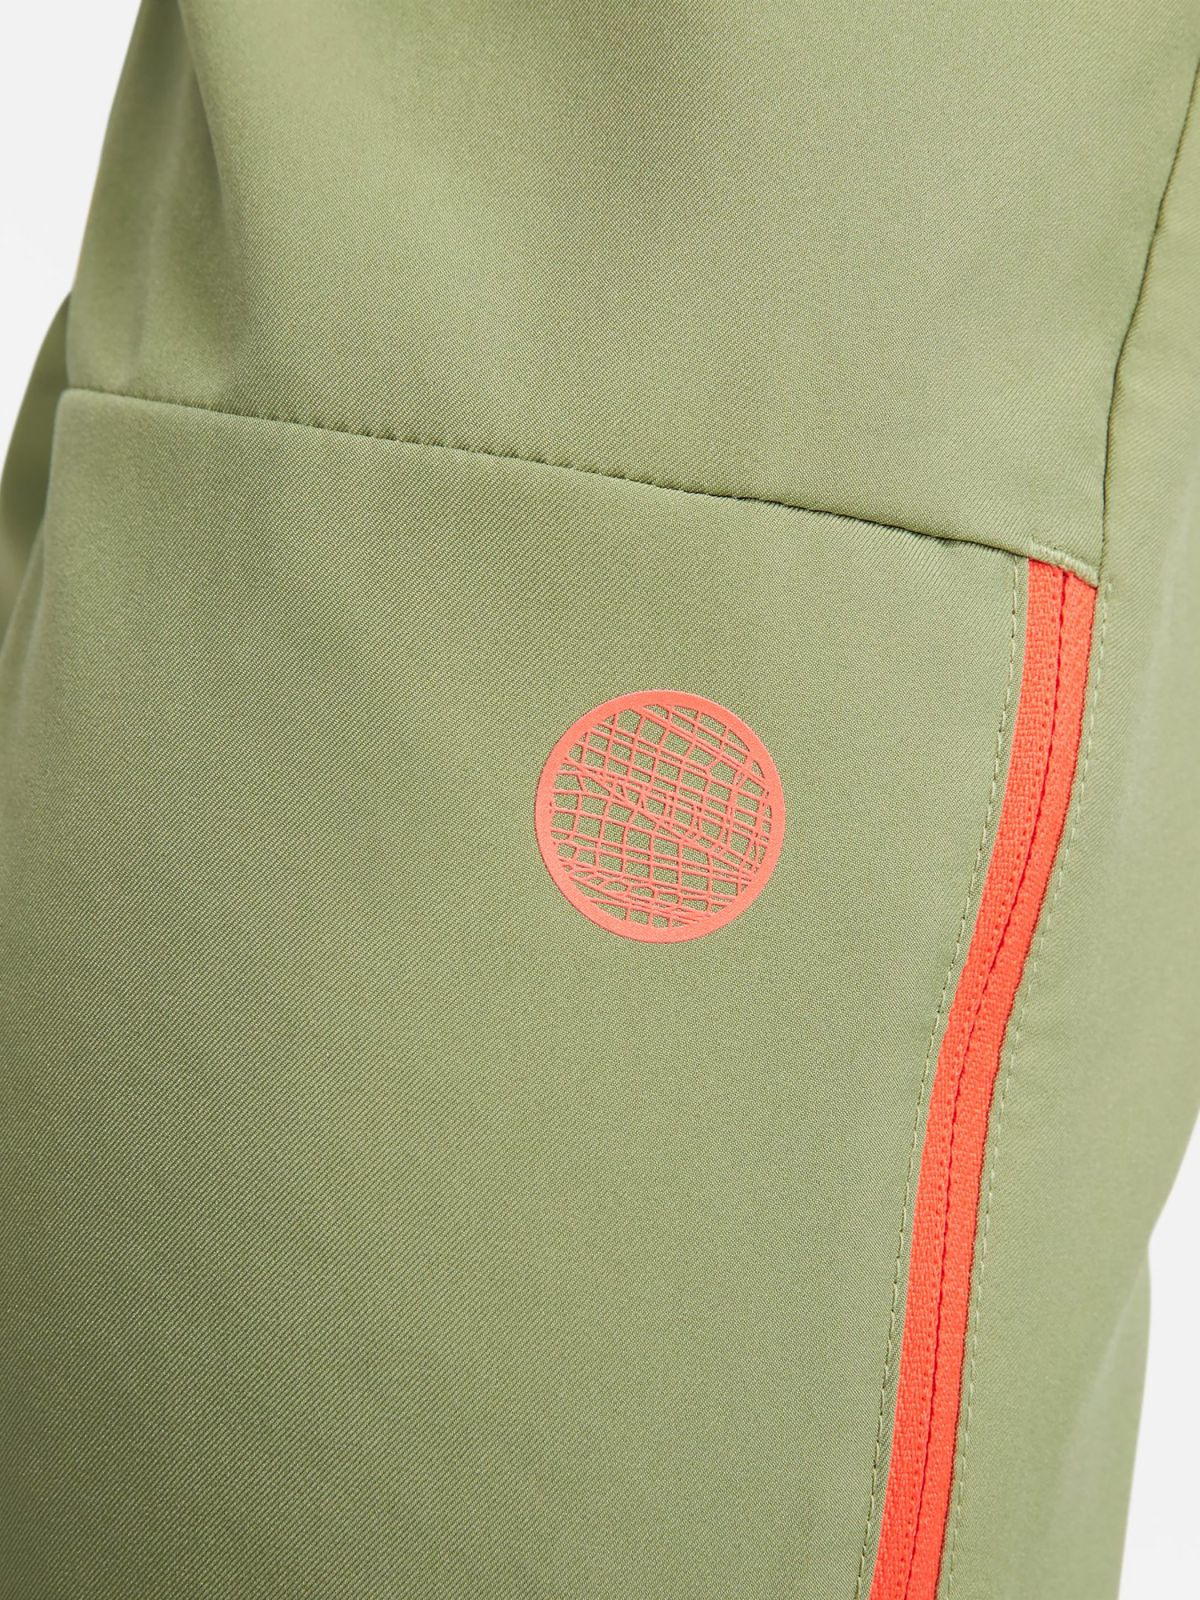  מכנסי ריצה Dri-FIT עם הדפס לוגו של NIKE